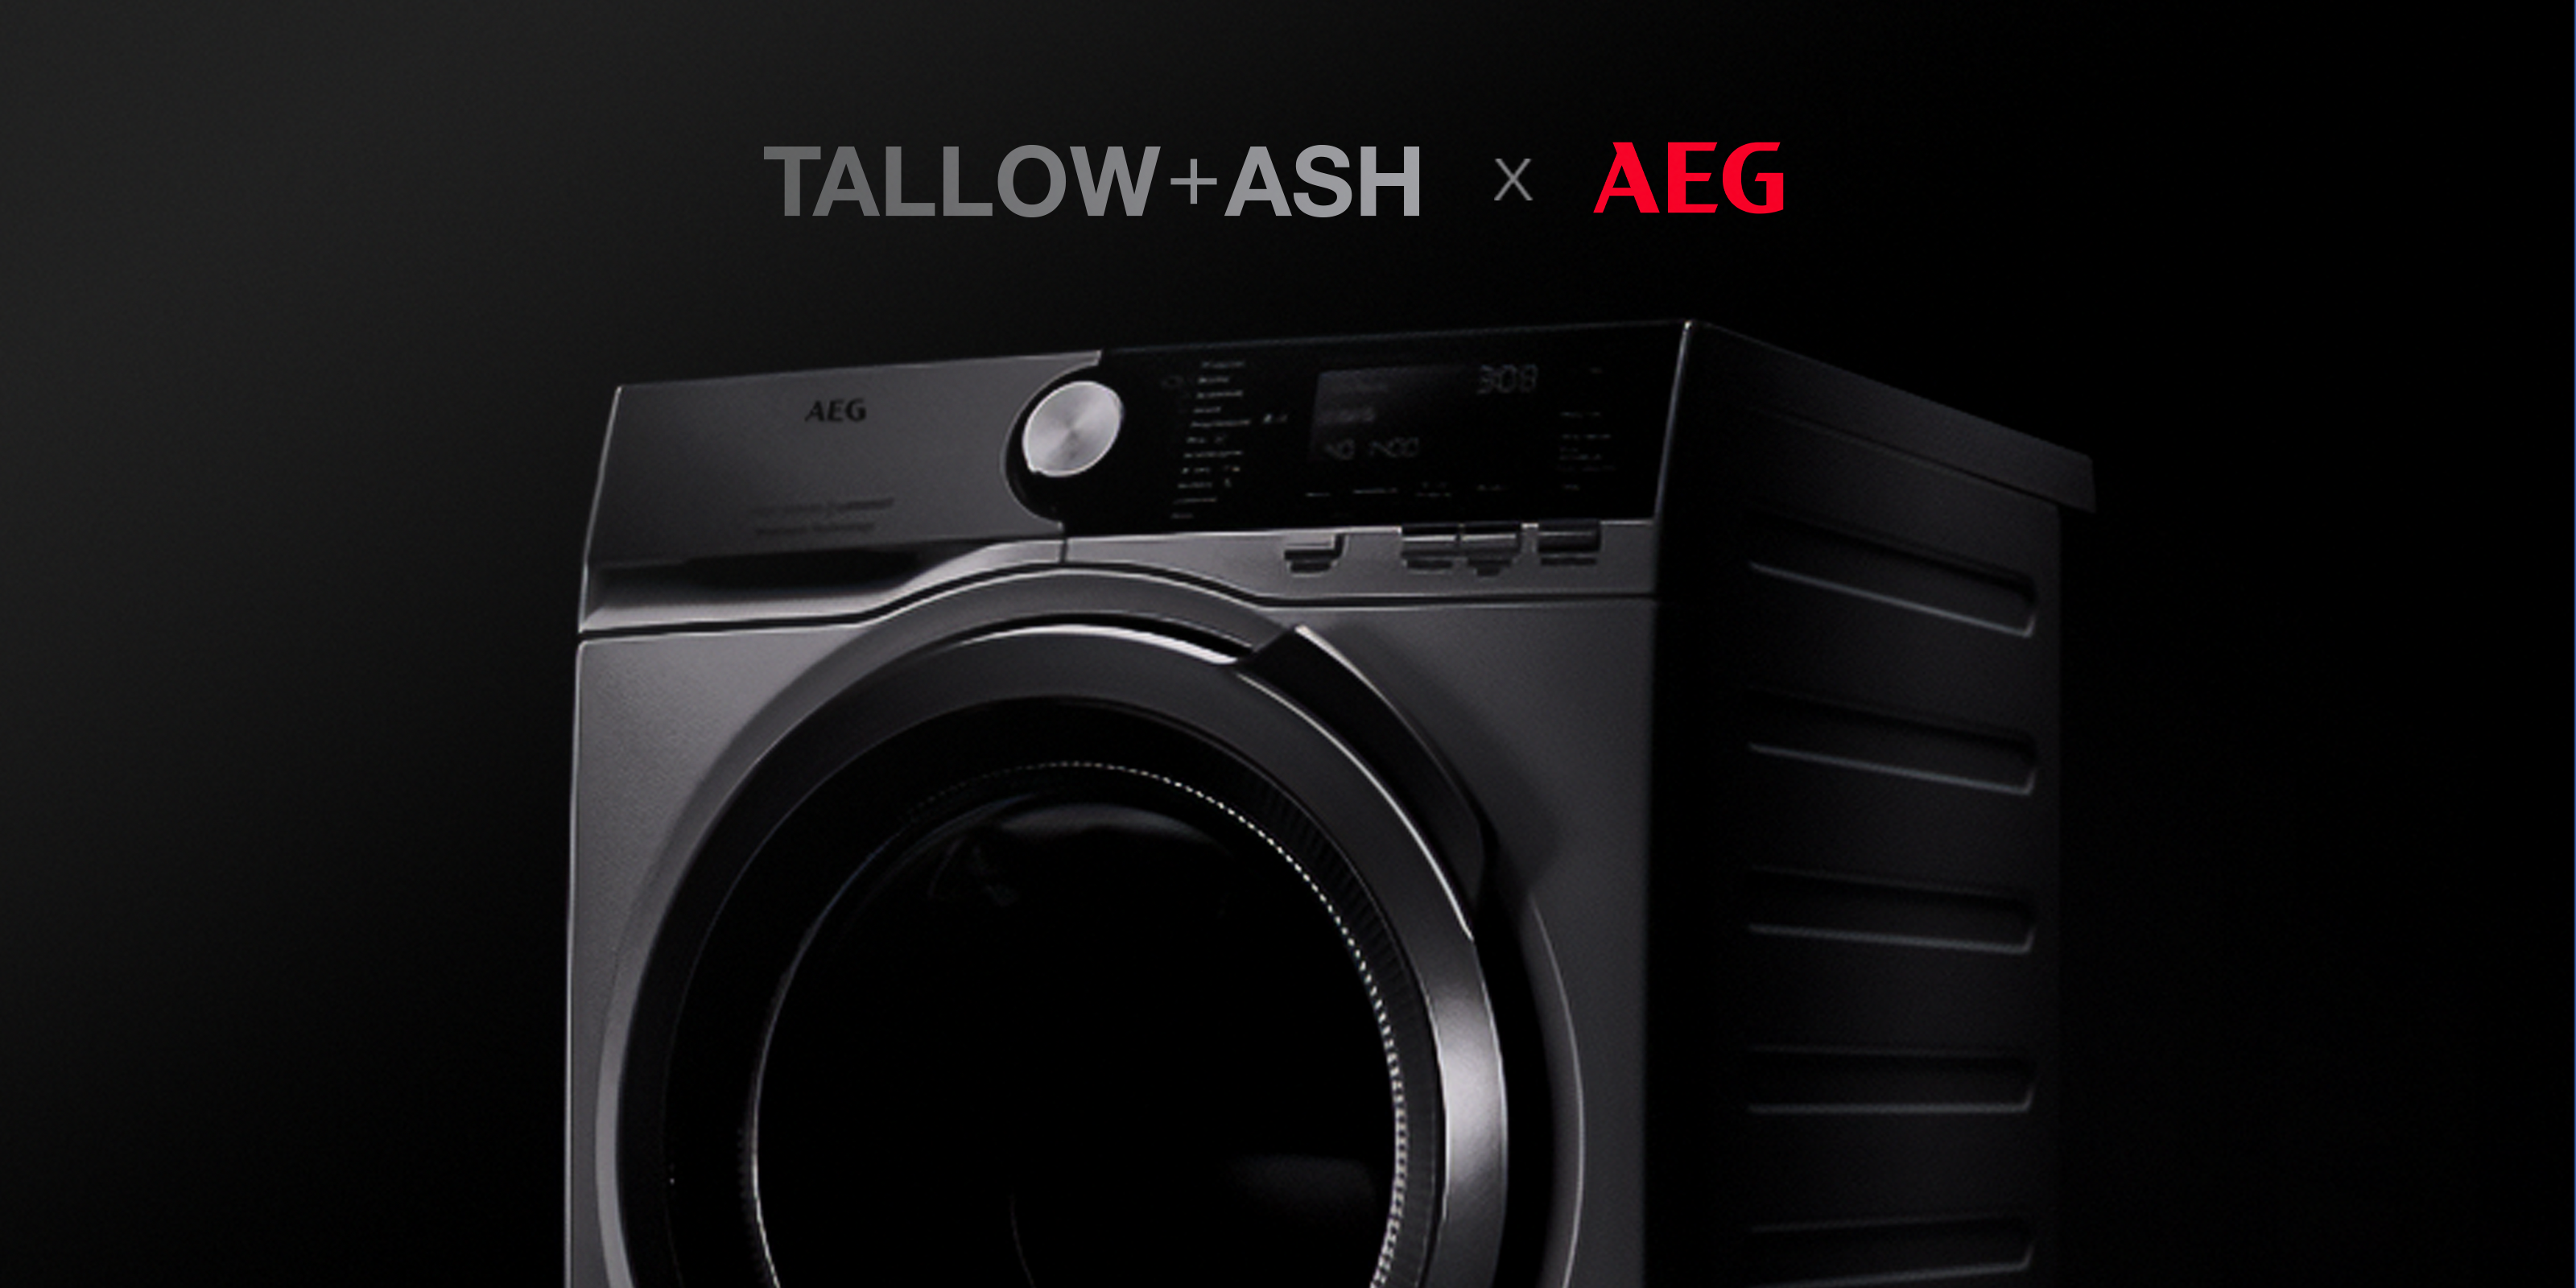 Tallow + Ash x AEG